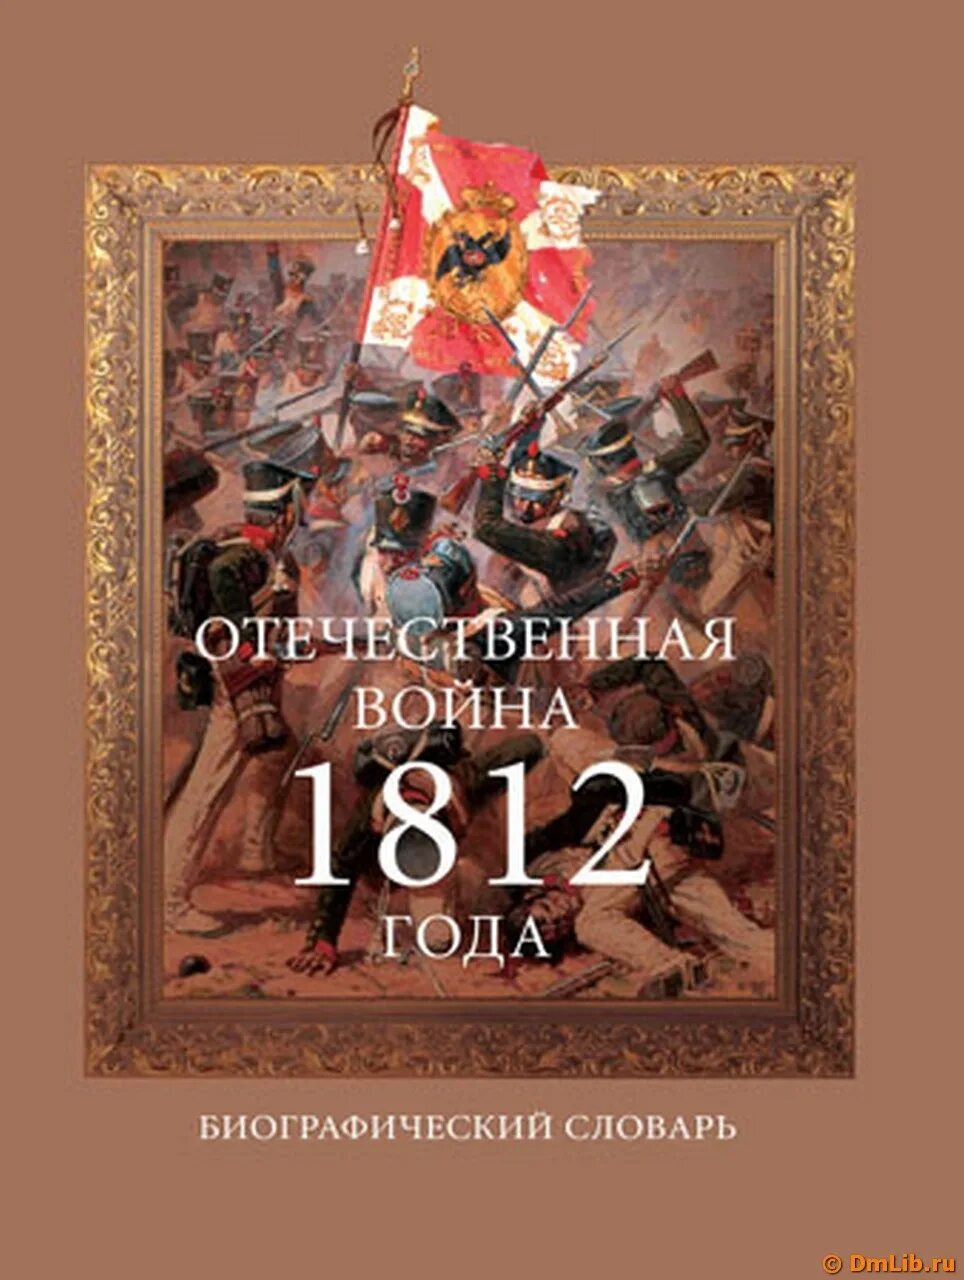 Произведения о войне 1812. Книги про отечественную войну 1812 года. Книги о войне 1812 года.